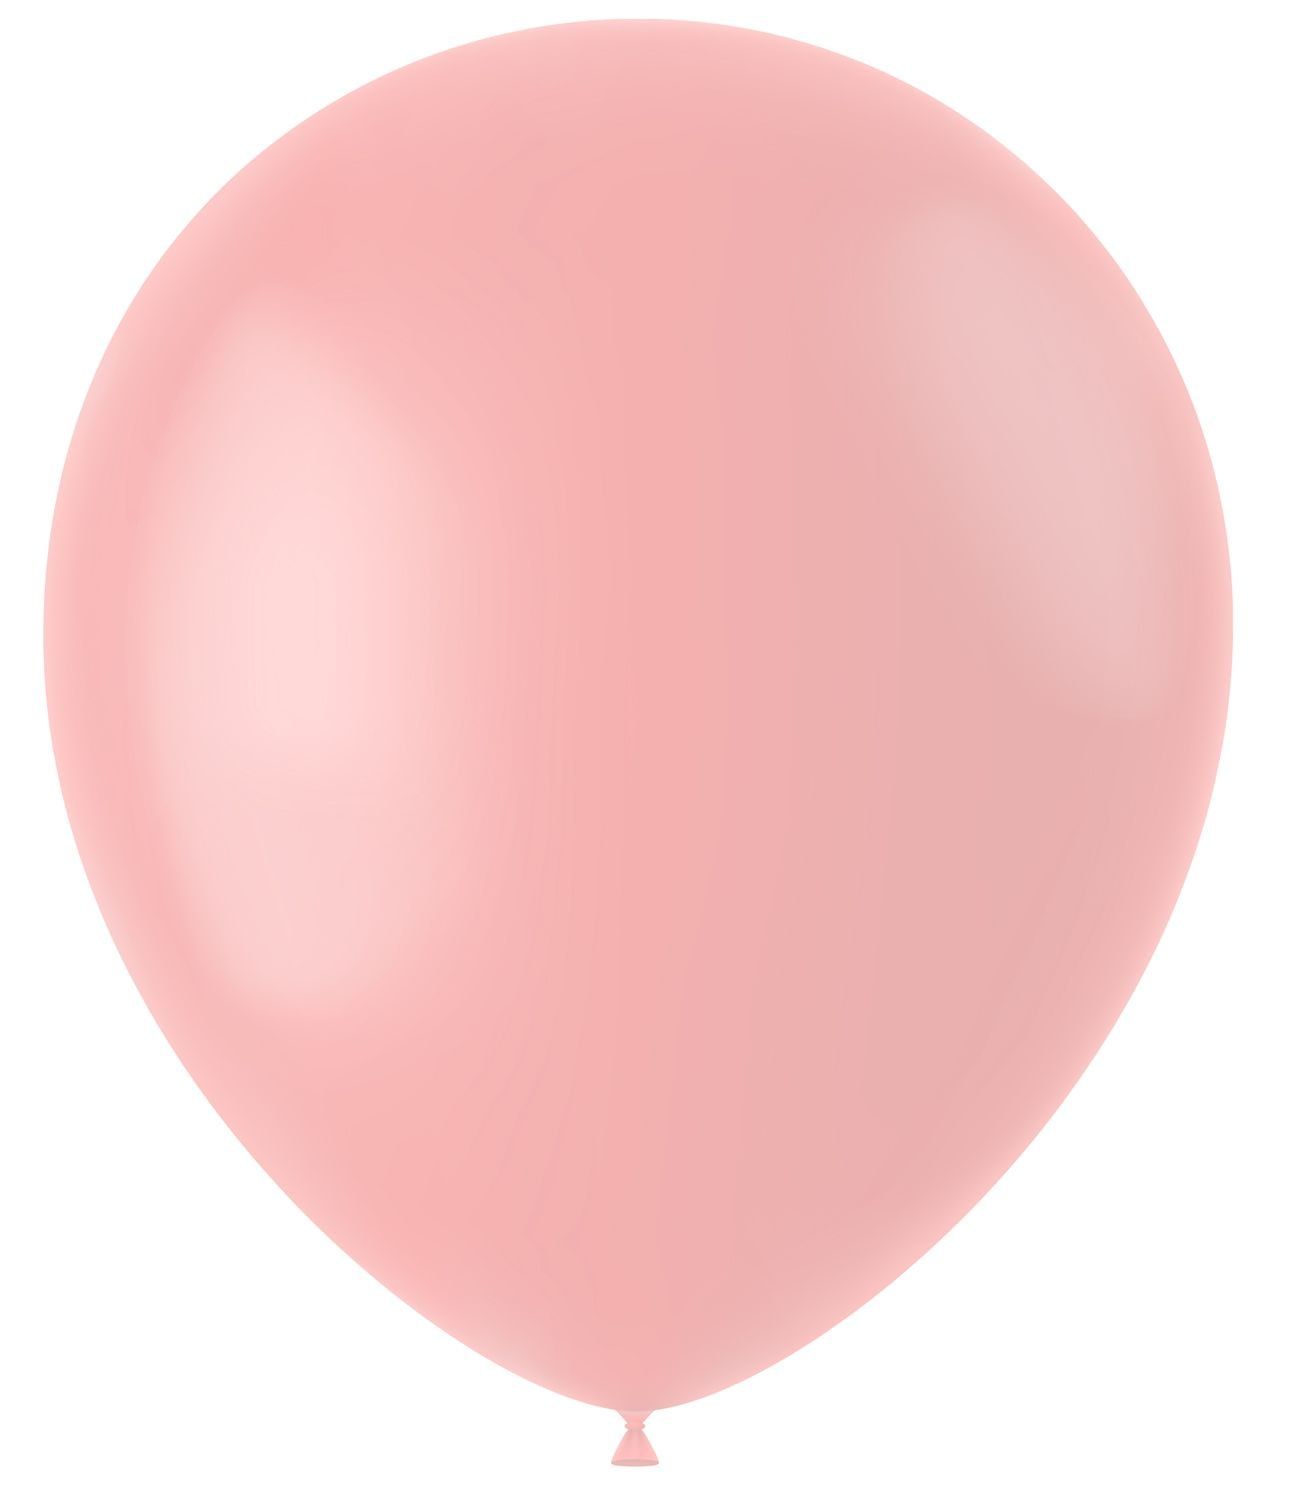 100 ballonnen powder pink mat 33cm